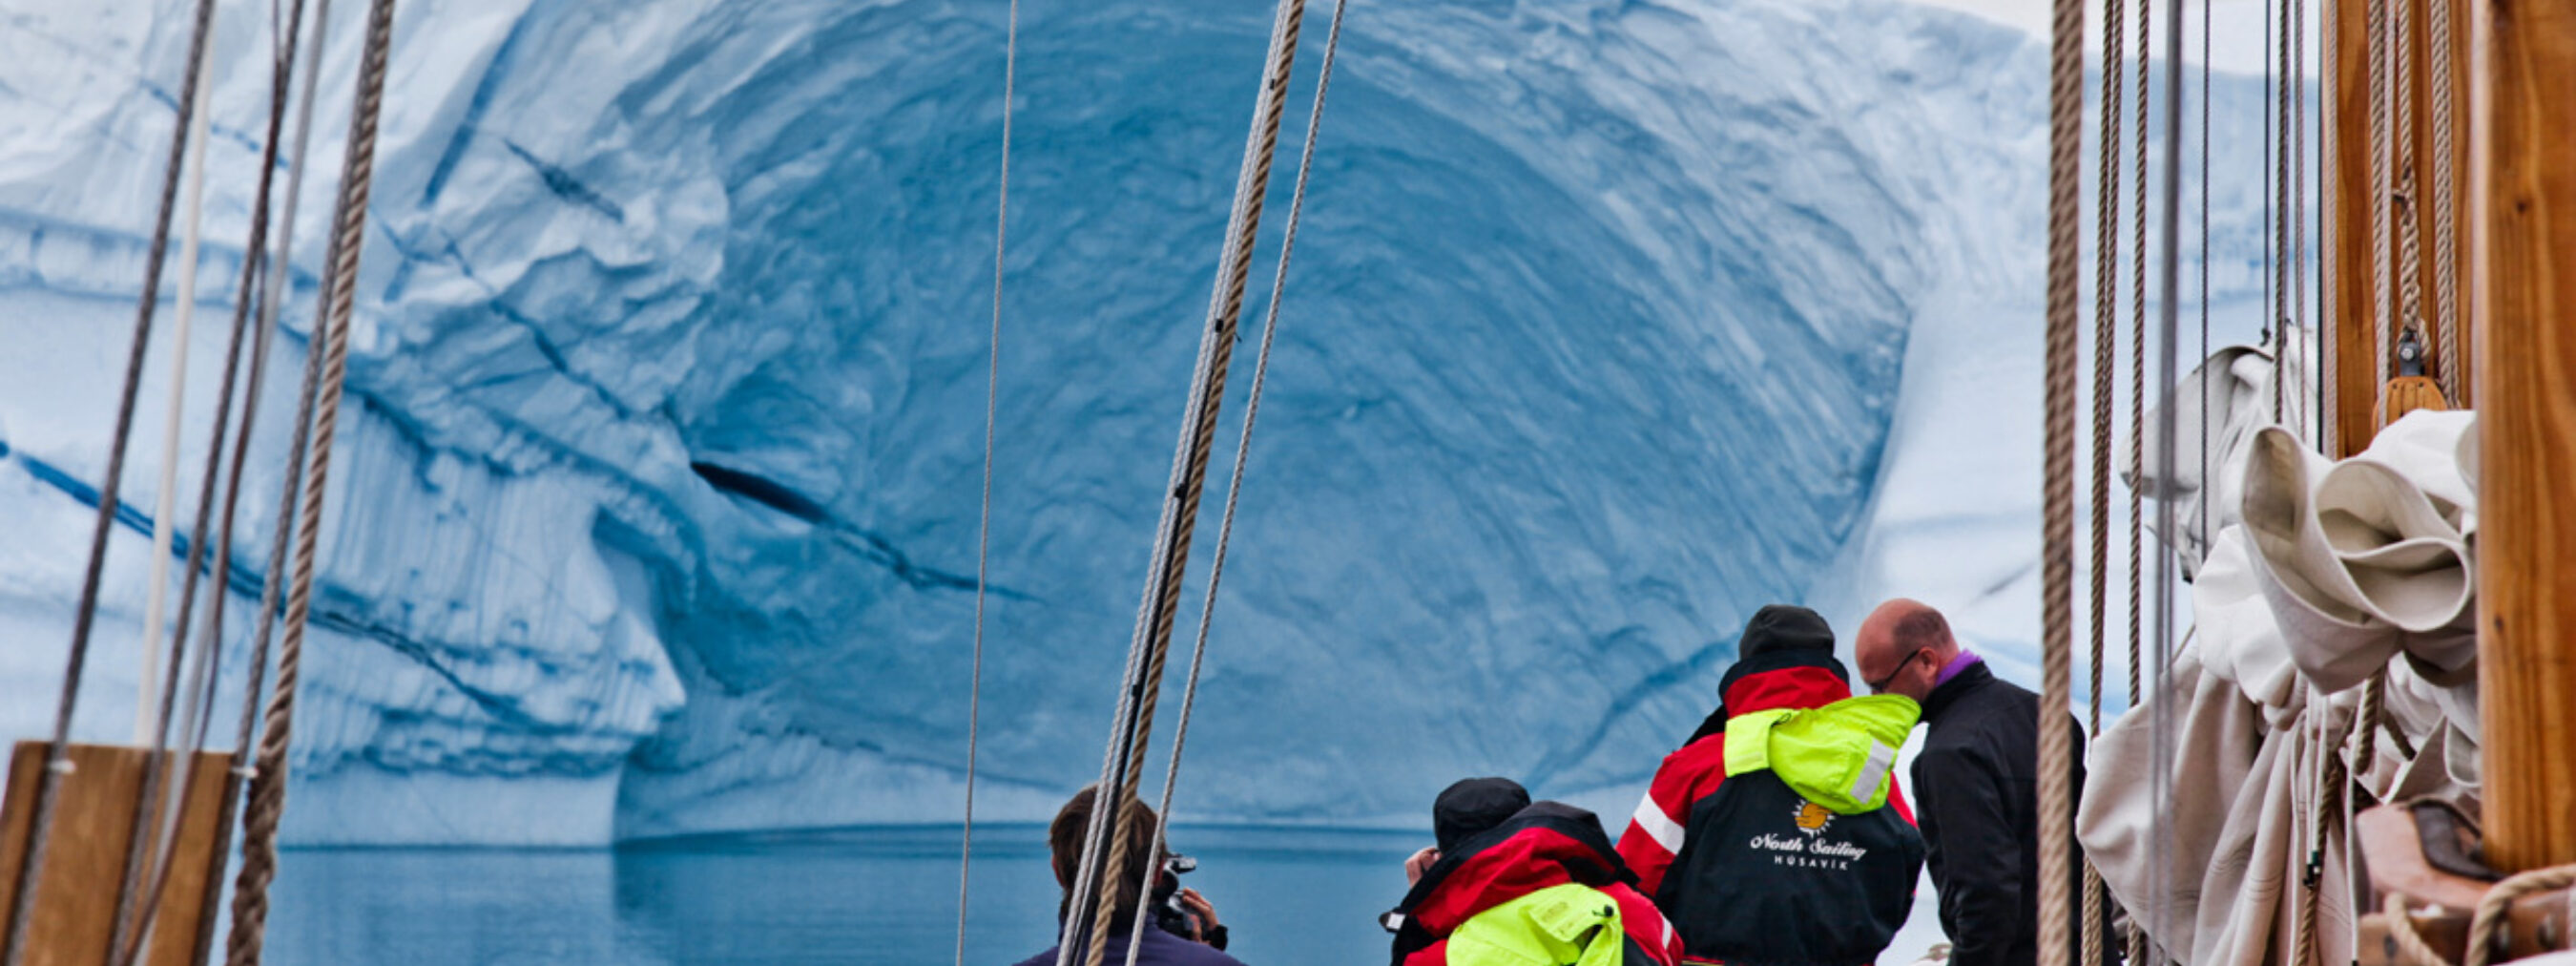 Eisbergbeobachtung, Ostgrönland
Teilnehmer der Segeltour bestaunen riesigen Eisberg